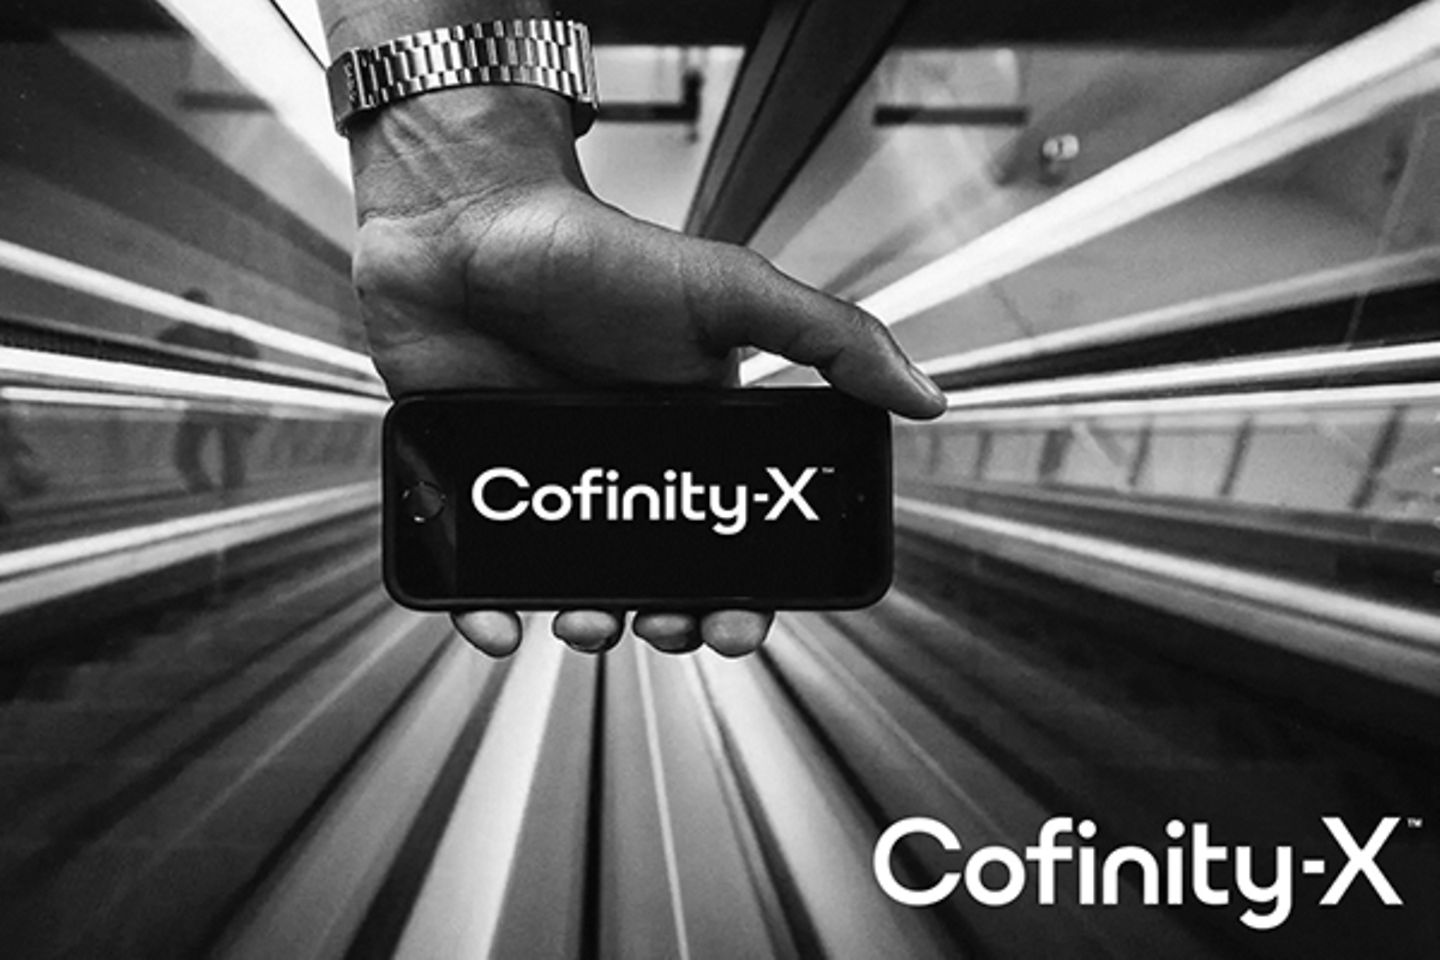 Une main tient un smartphone avec le logo Confinity-X